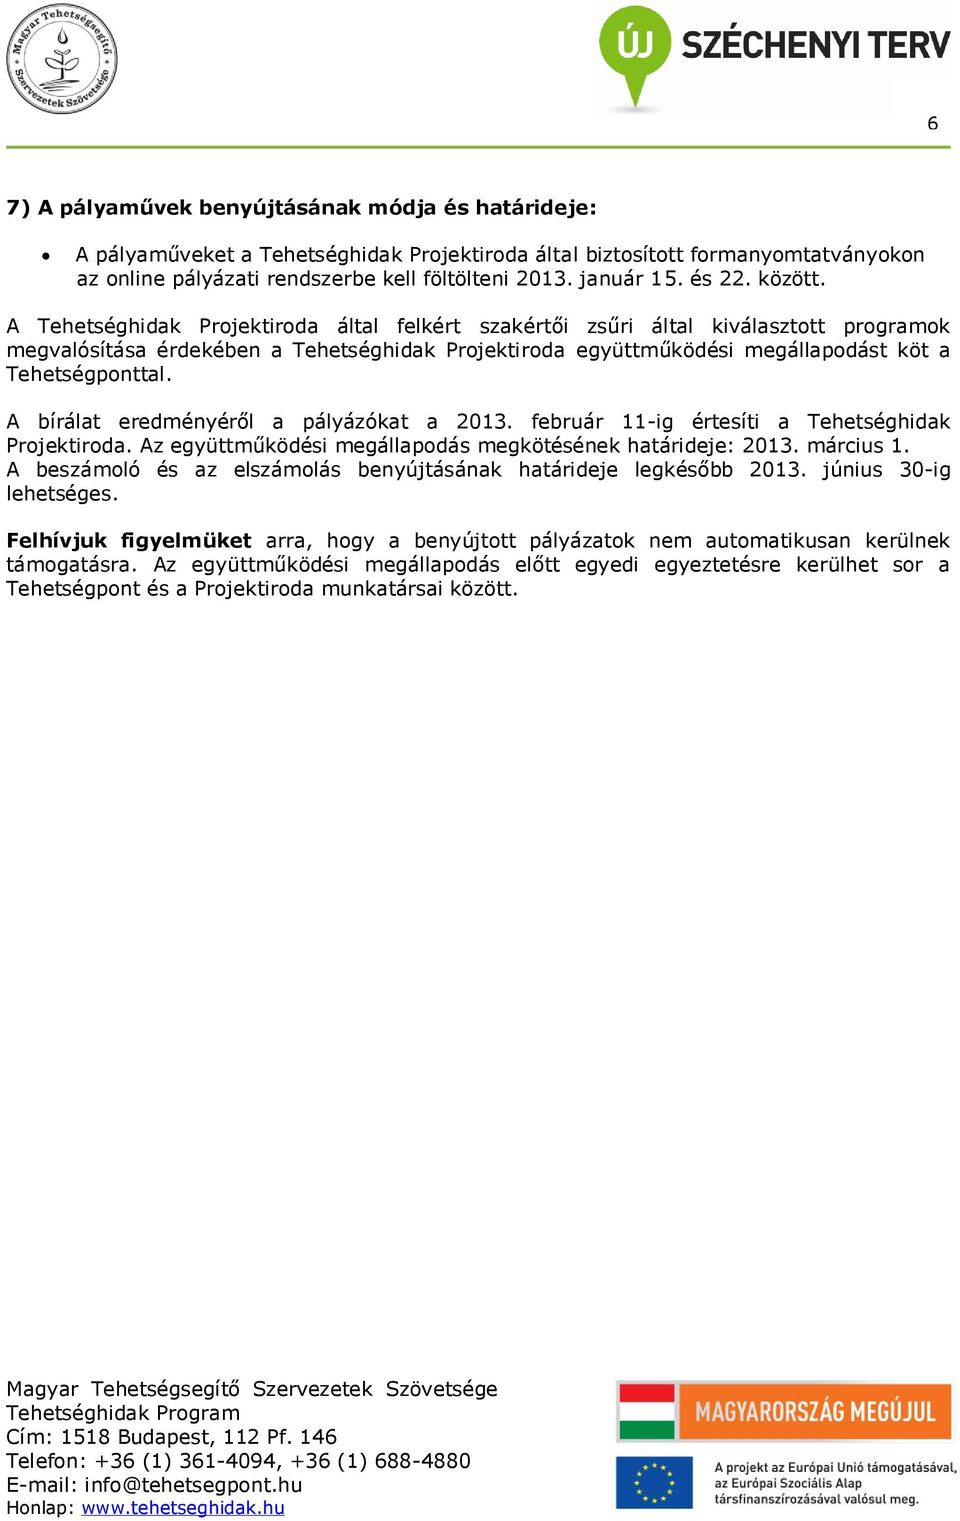 A bírálat eredményéről a pályázókat a 2013. február 11-ig értesíti a Tehetséghidak Prjektirda. Az együttműködési megállapdás megkötésének határideje: 2013. március 1.